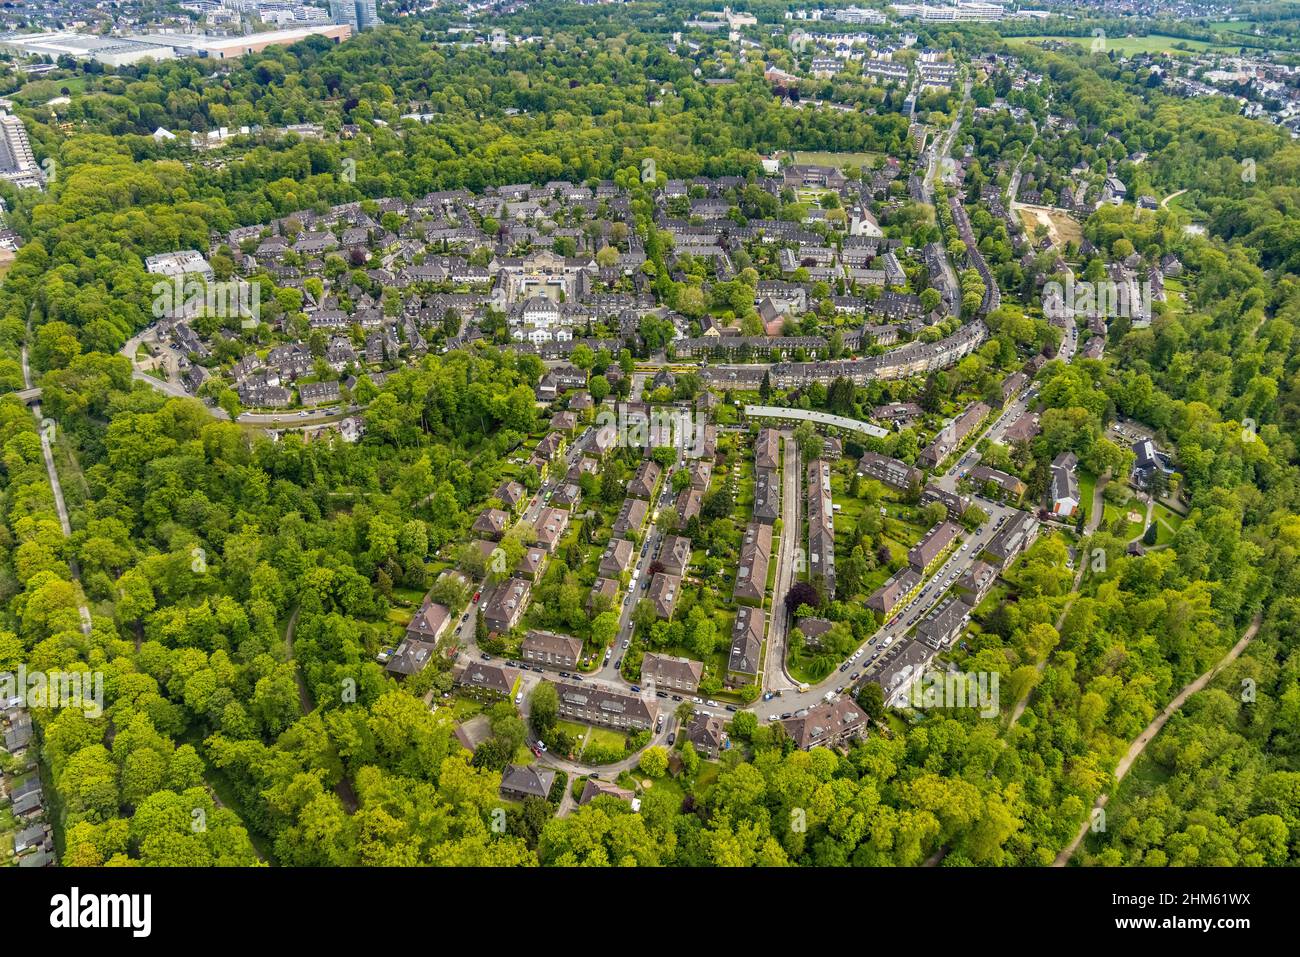 Luftbild, Gartenstadt Margarethenhöhe, Essen, Ruhrgebiet, Nordrhein-Westfalen, Deutschland Stock Photo